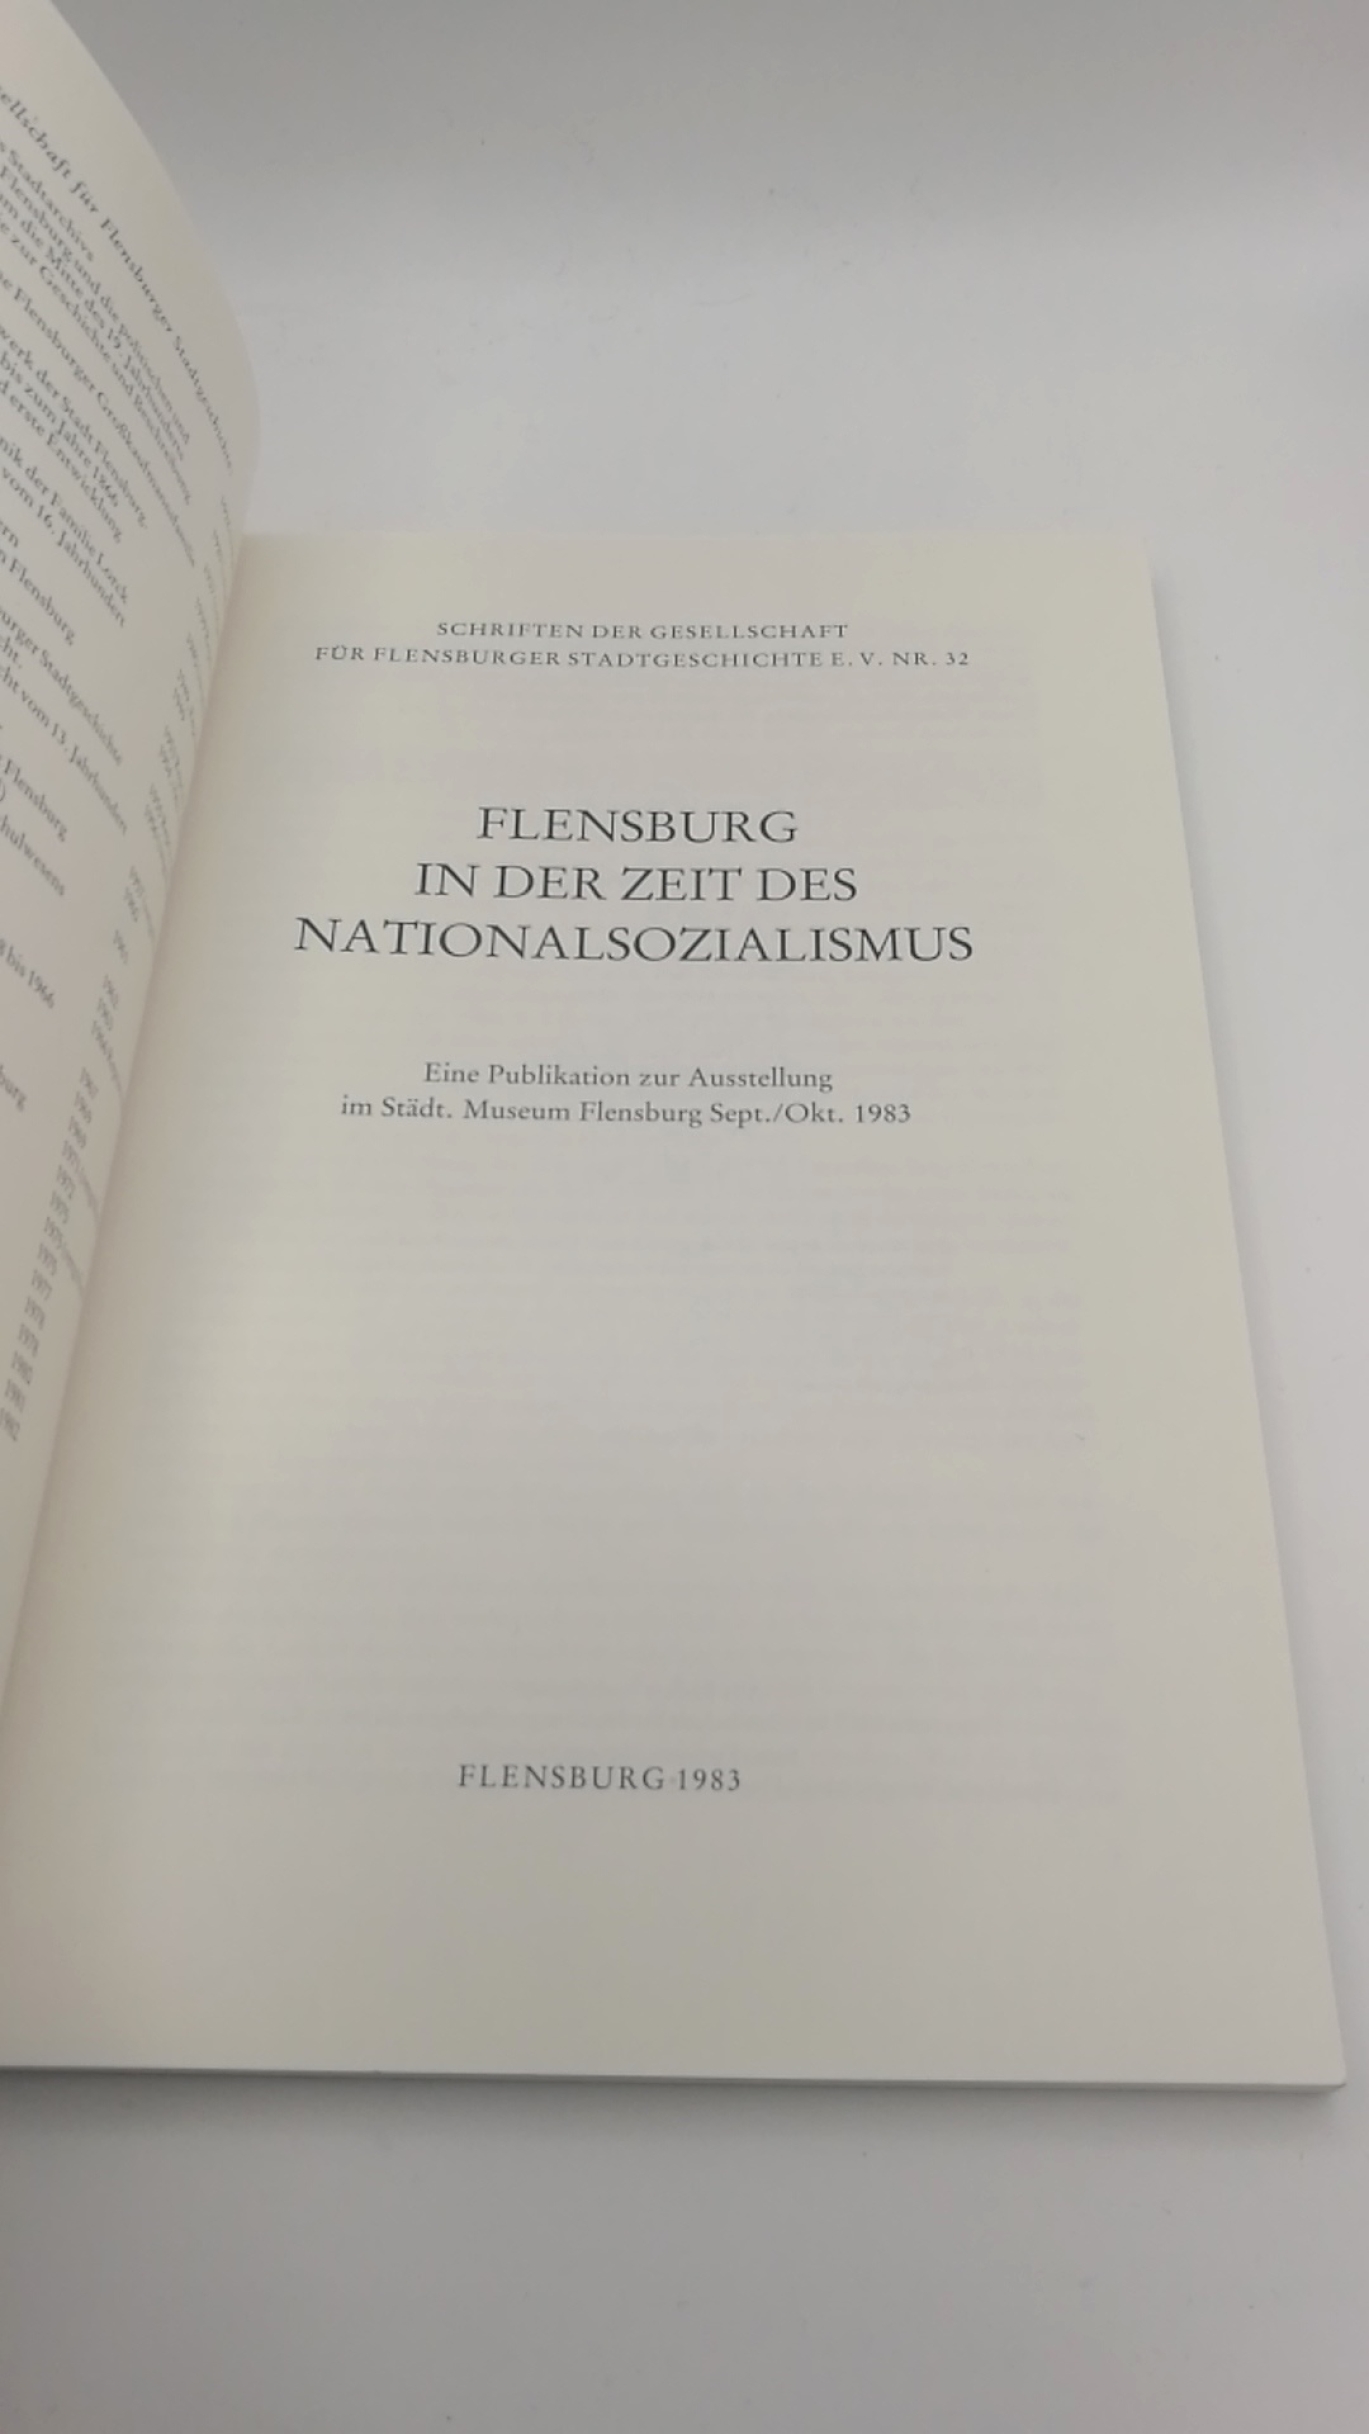 Gesellschaft für Flensburger Stadtgeschichte e.V. (Hrsg.): Flensburg in der Zeit des Nationalsozialismus Eine Publikation zur Ausstellung im Städtischen Museum Flensburg Sept./Okt. 1983